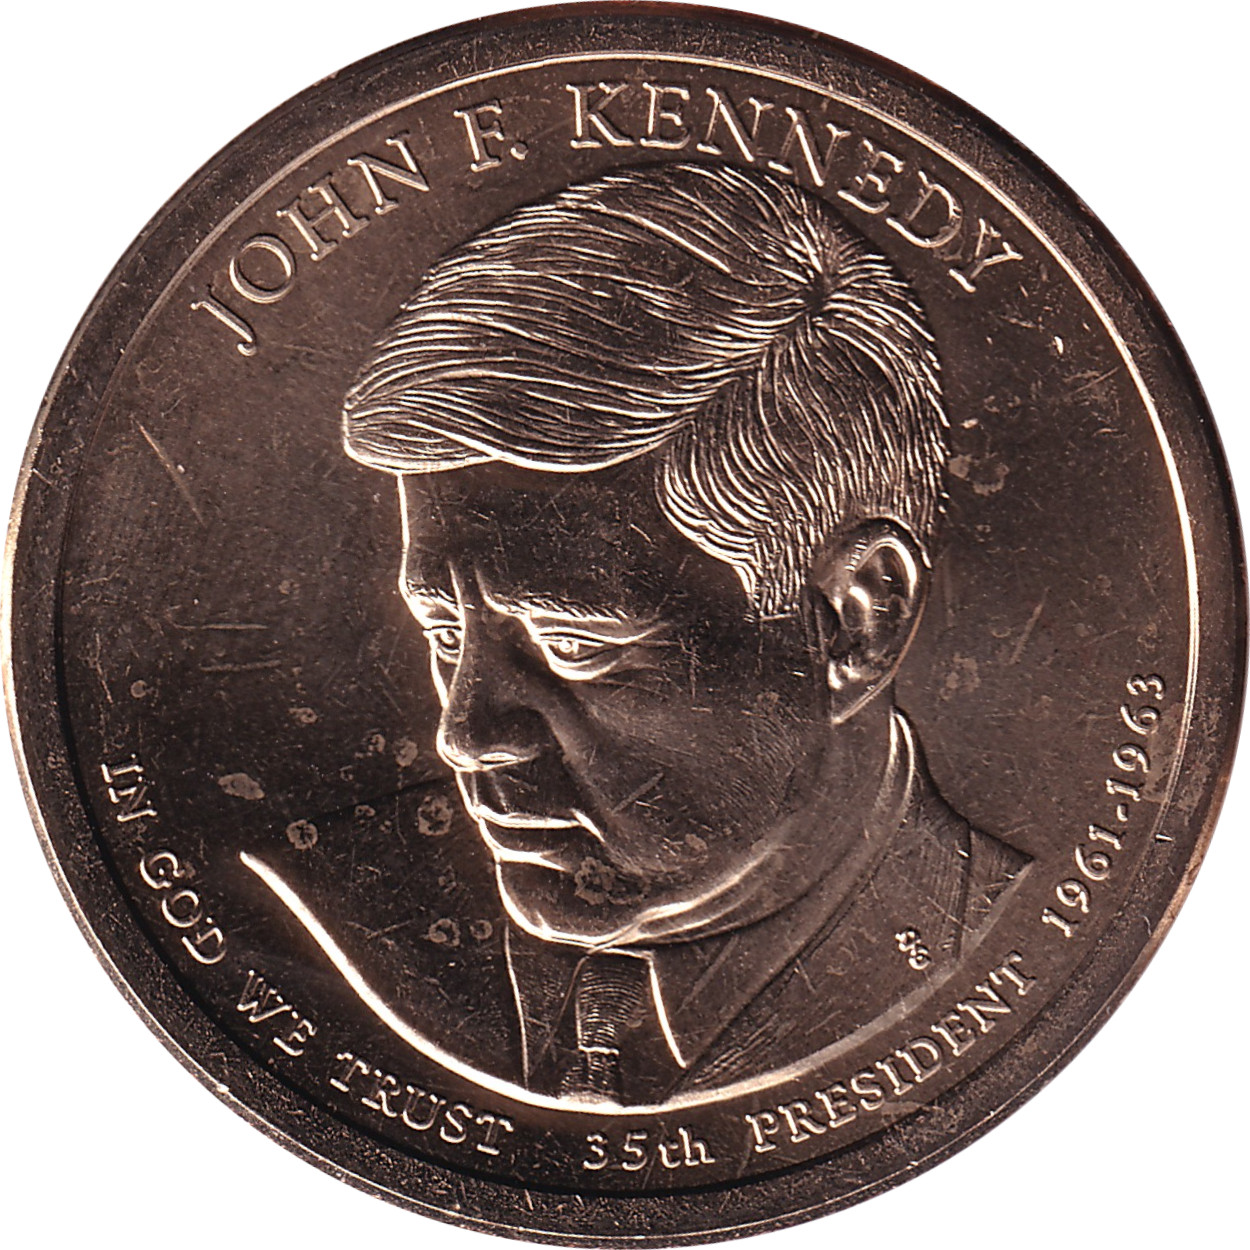 1 dollar - John F. Kennedy